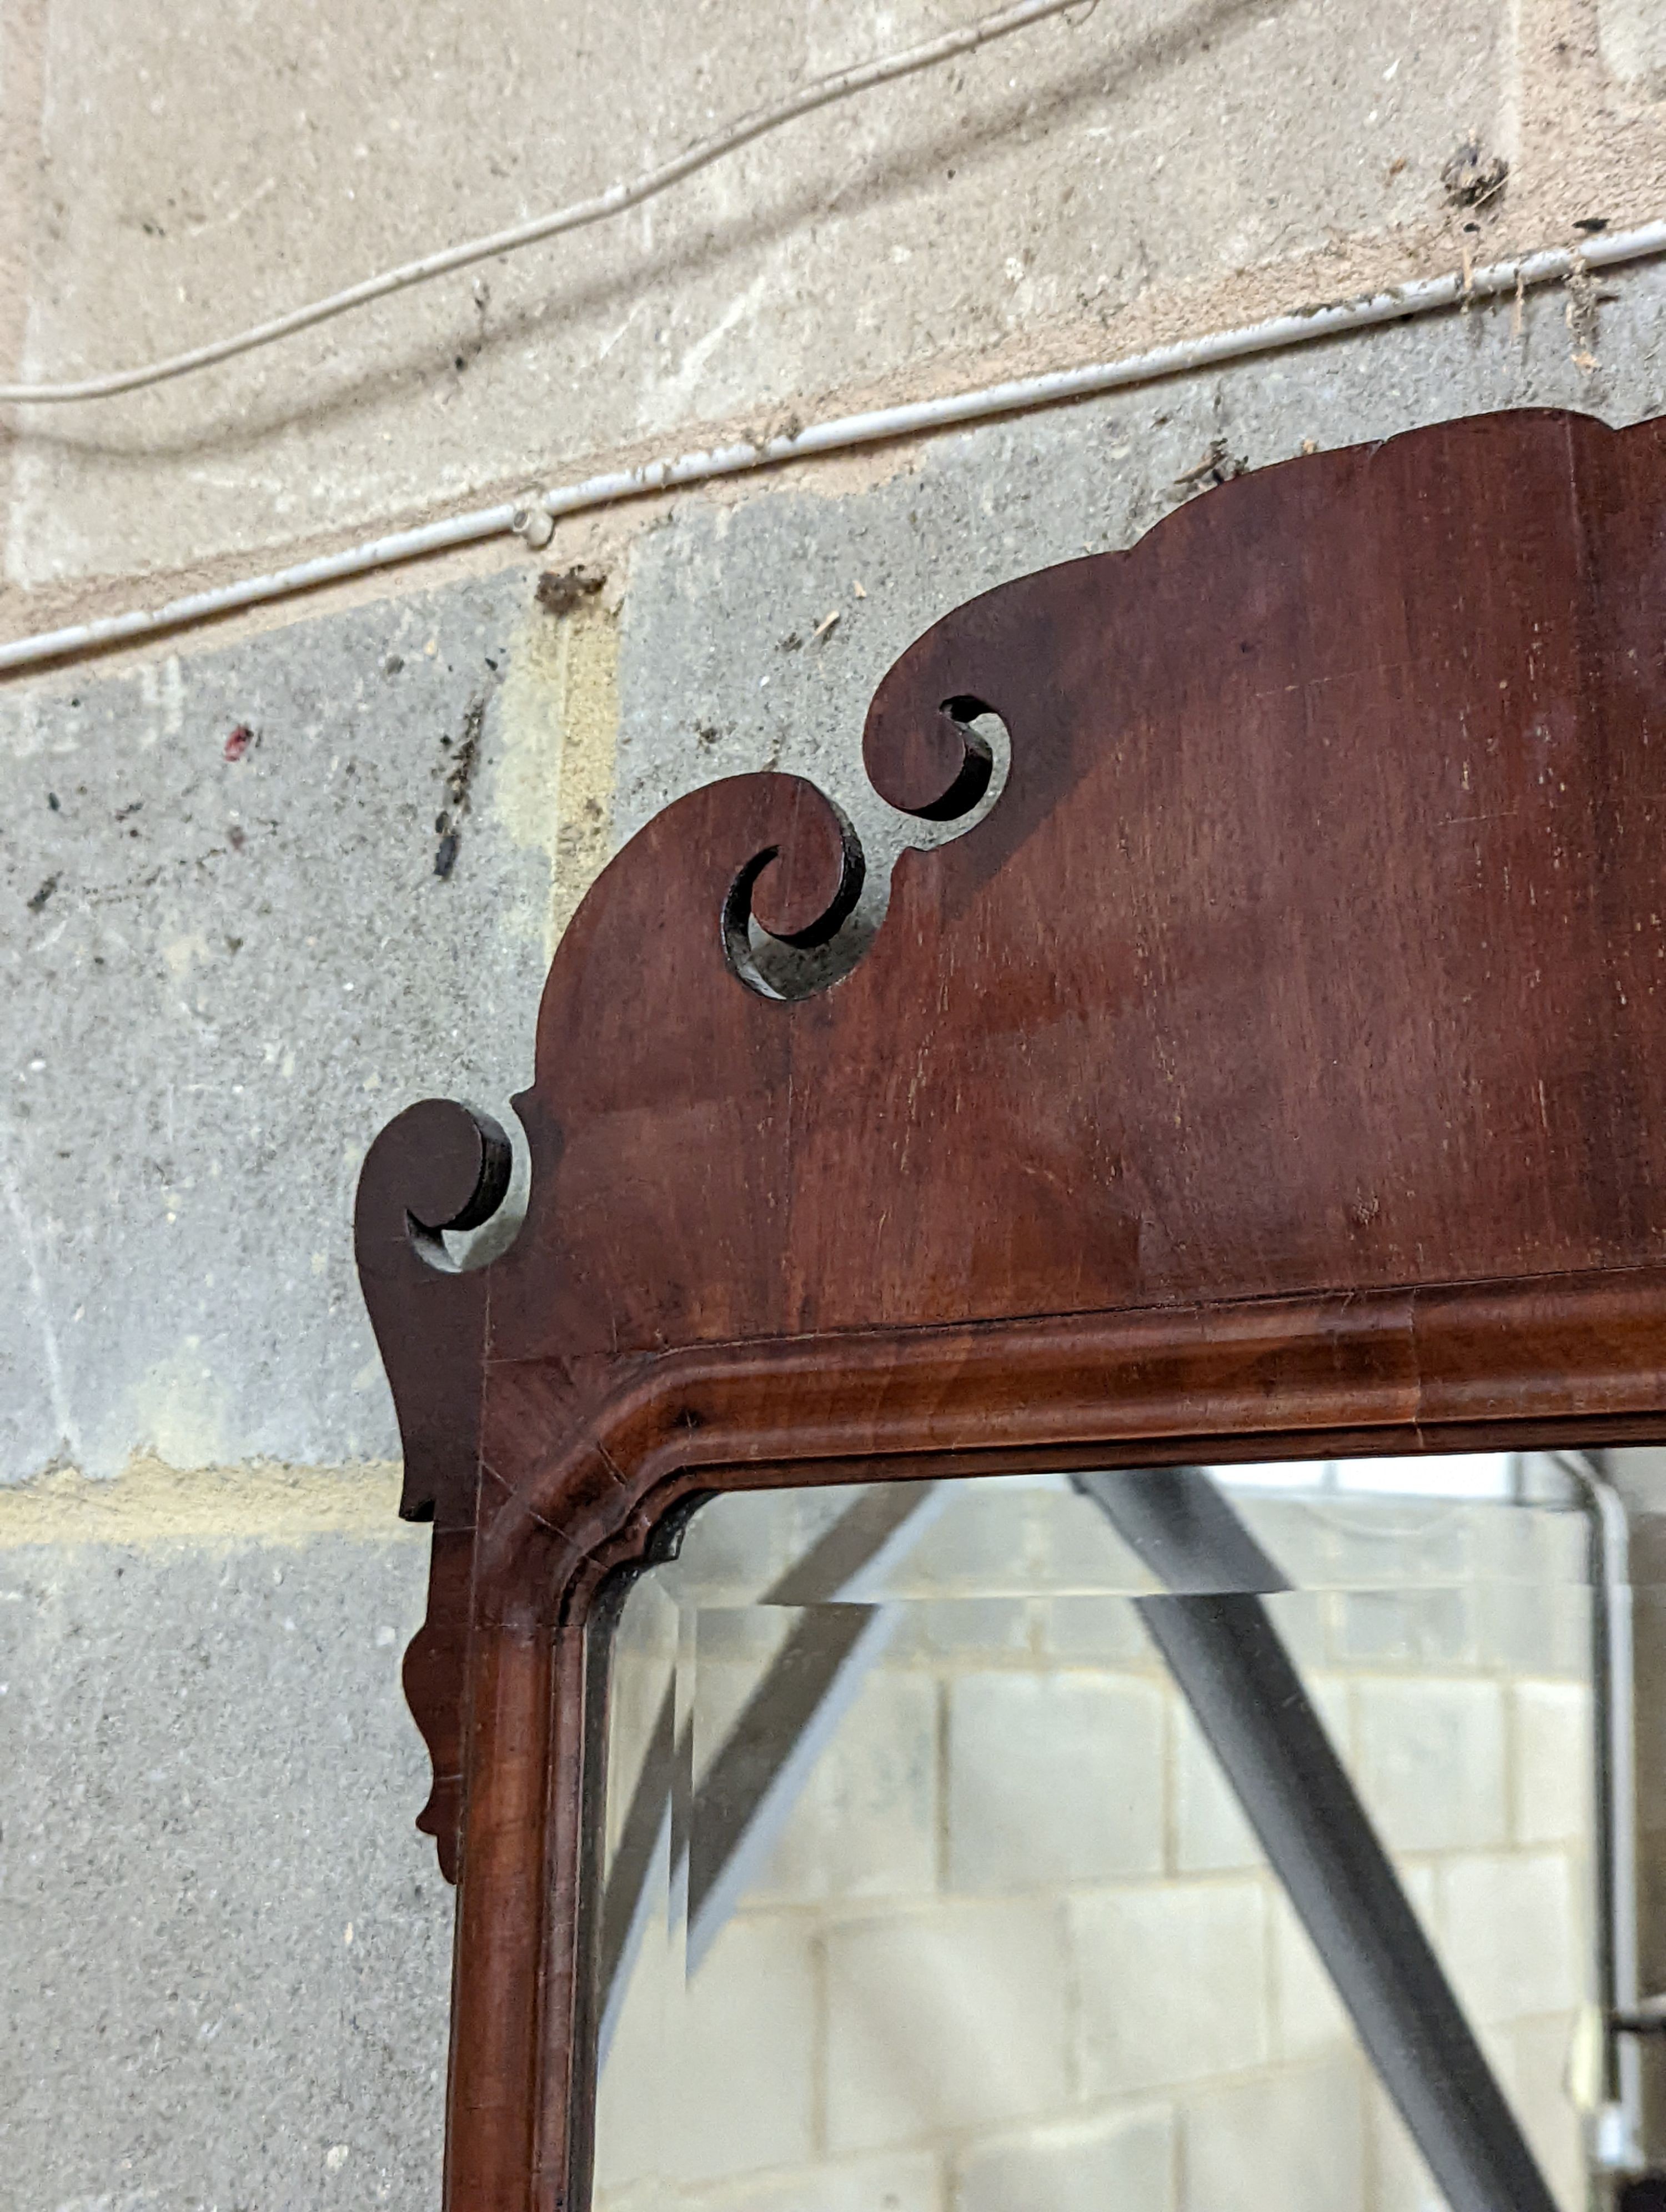 A George II style Fret cut mahogany wall mirror. Length - 86cm, Width - 48cm.